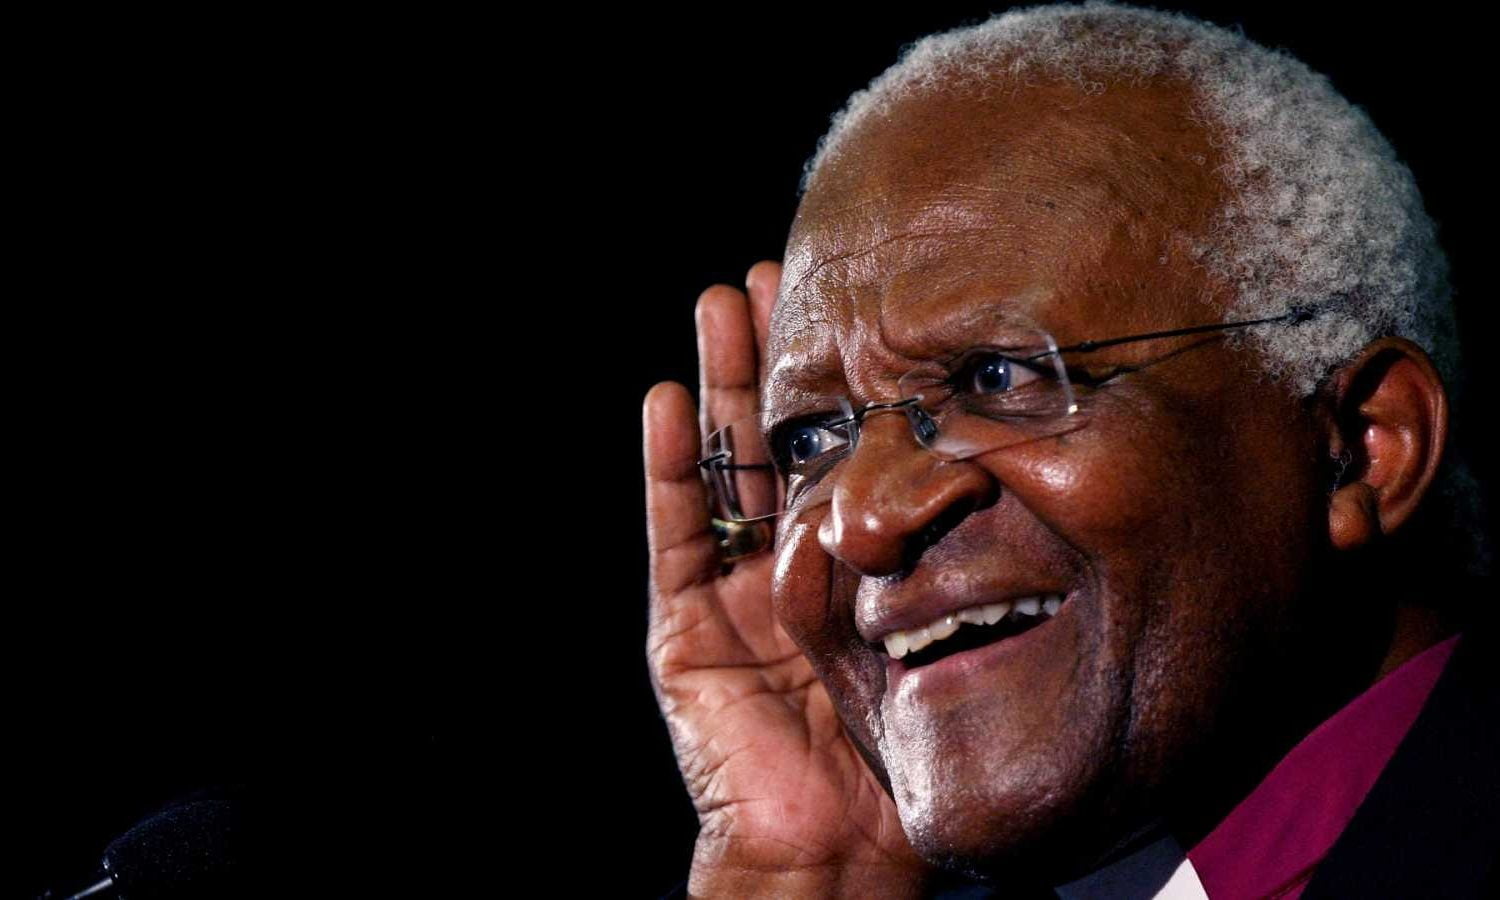 Falleció Desmond Tutu, icono de la lucha contra el apartheid en Sudáfrica y Premio Nobel de la Paz